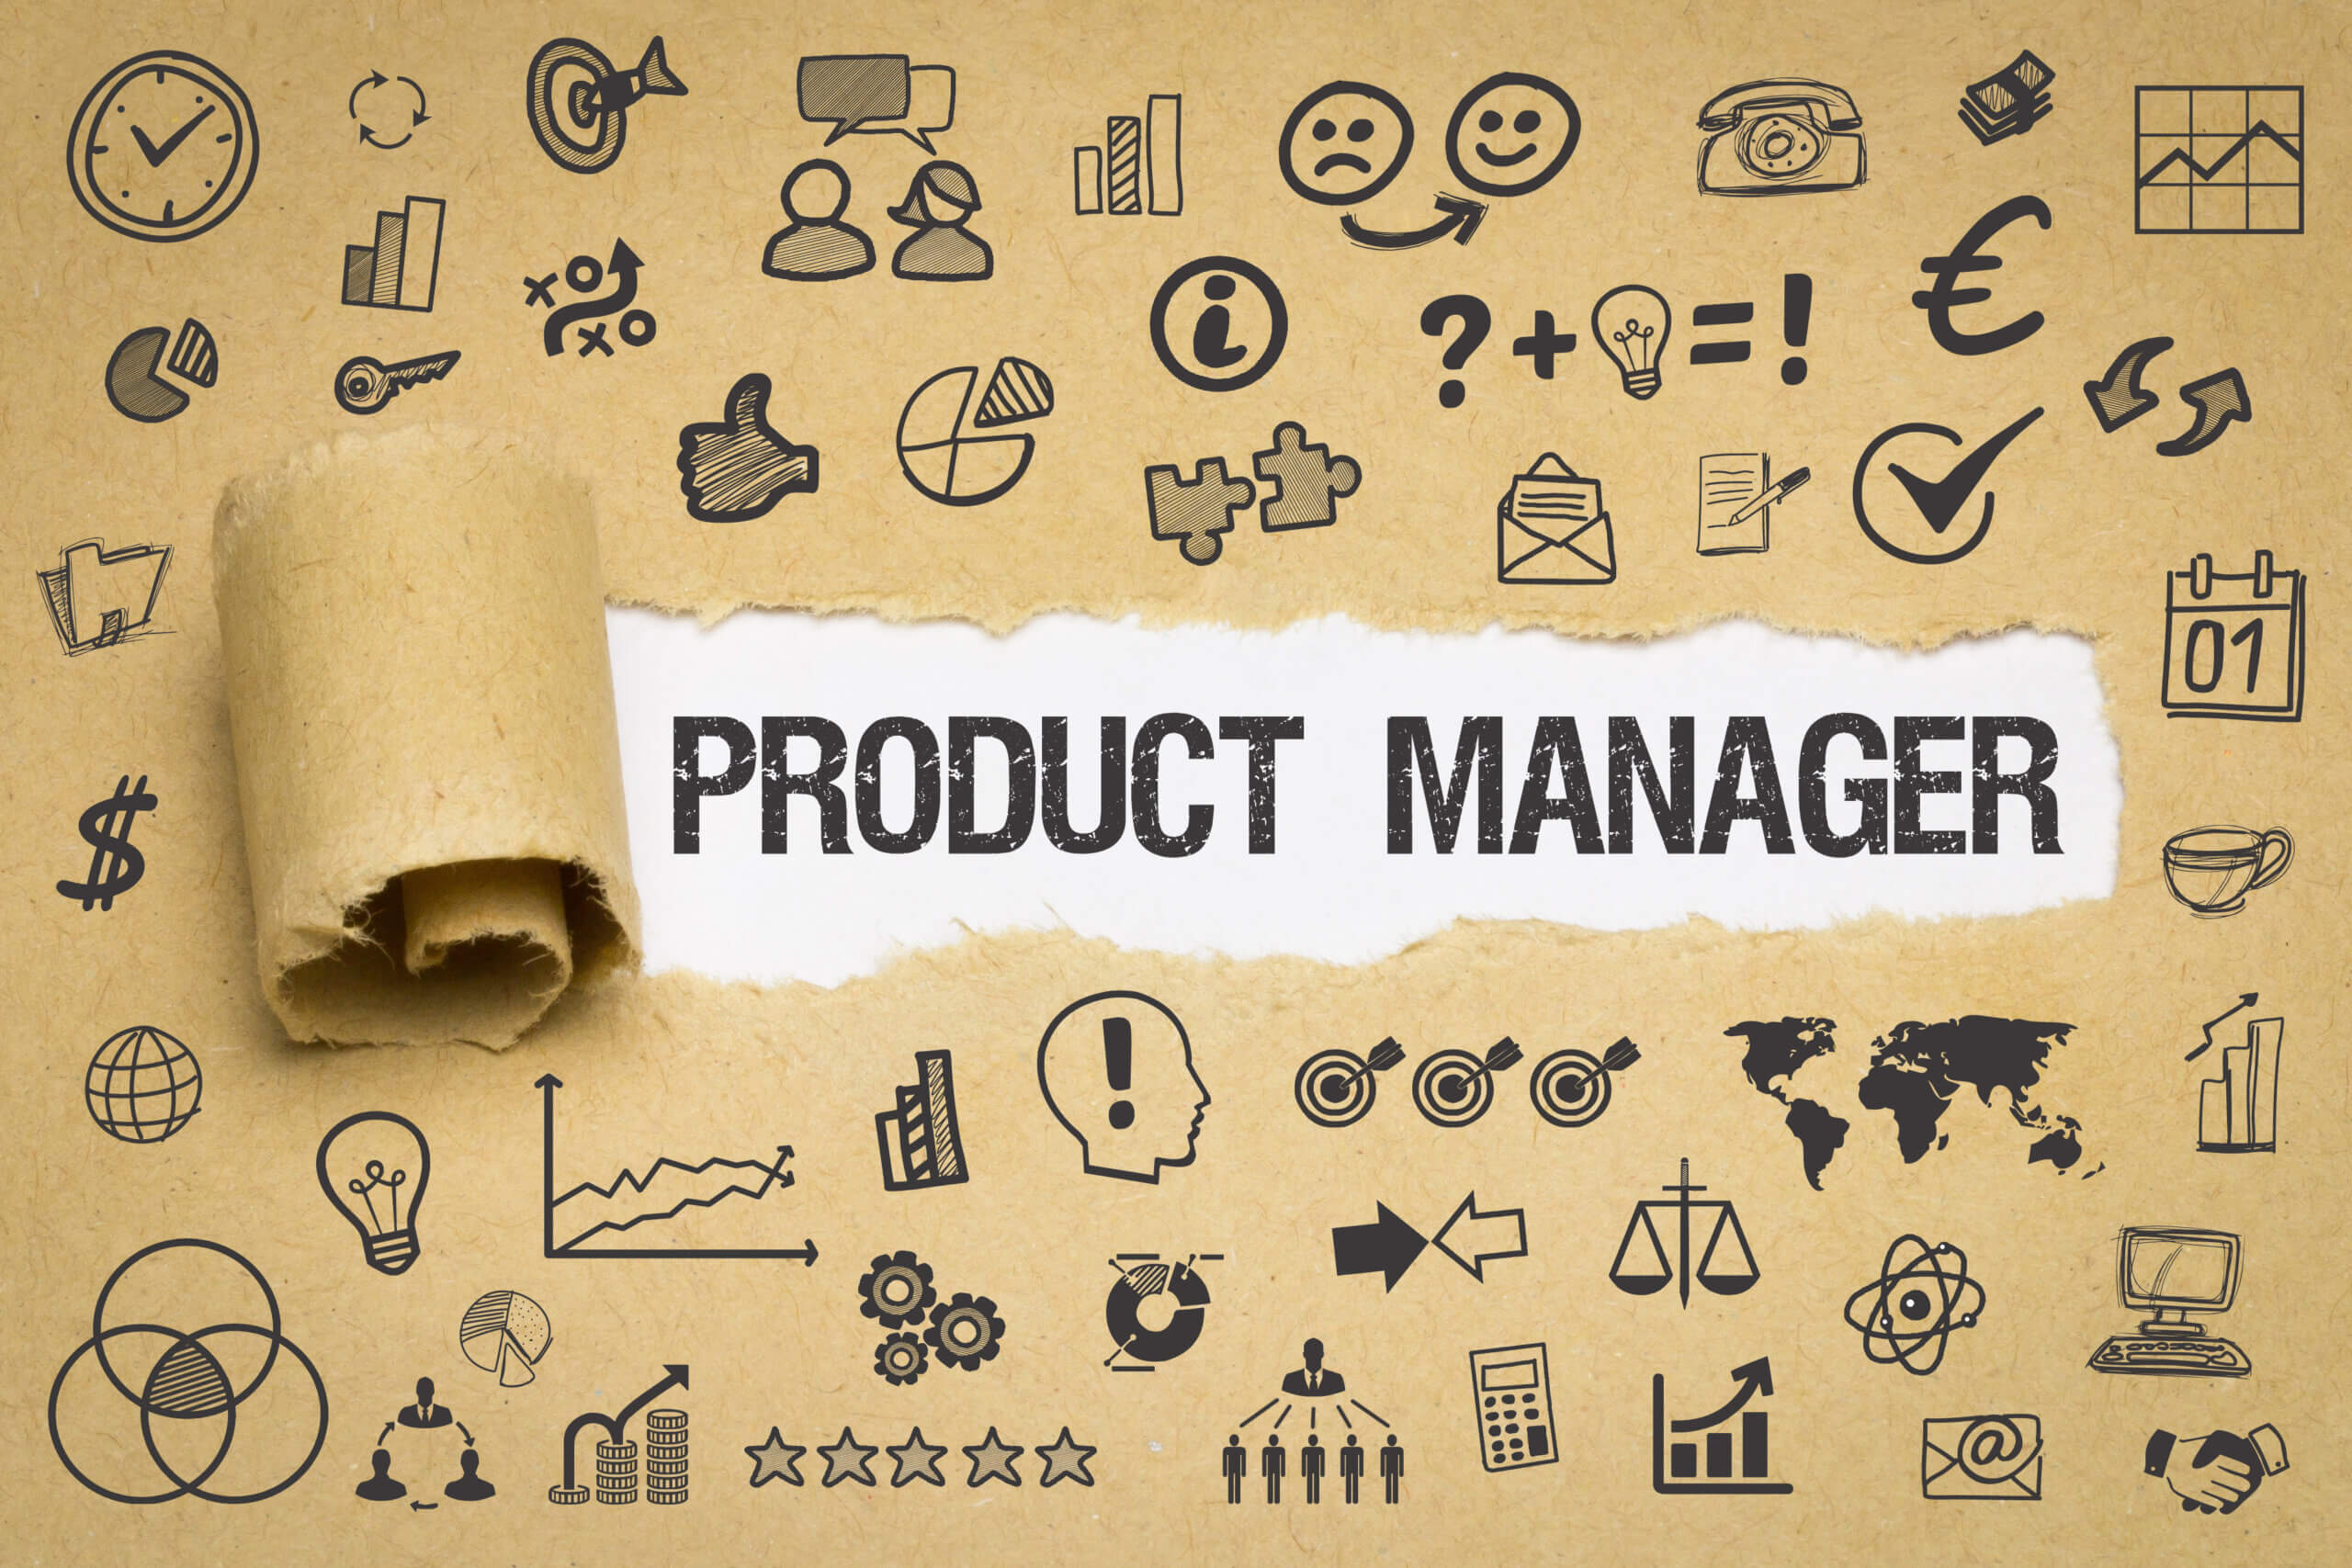 Conceito de product manager em uma imagem com diversos ícones que representam o cargo.